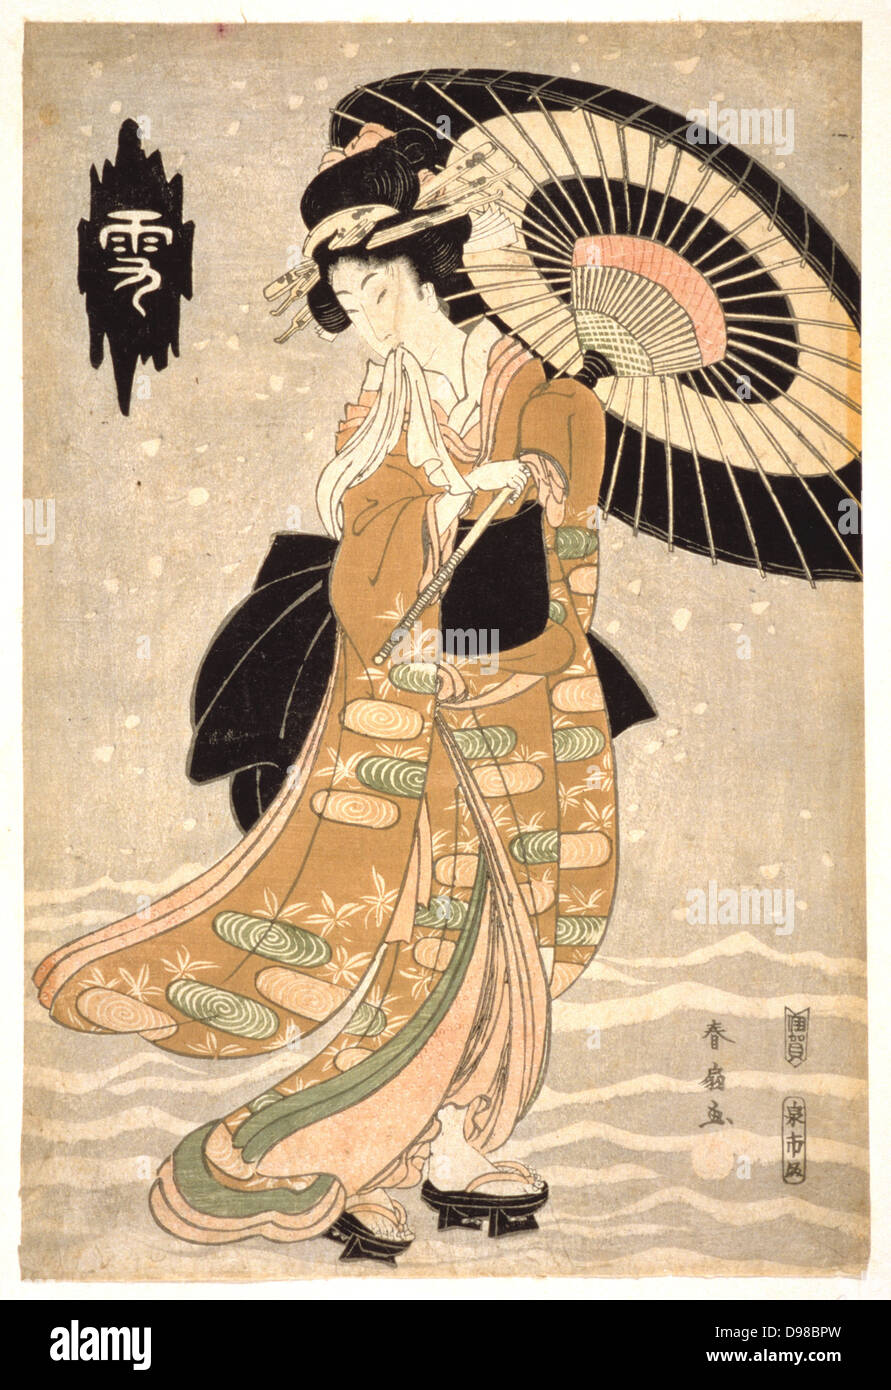 Jeune femme avec un parasol en chute de neige. Gravure sur bois en couleur de la série "maintenant, de la lune et des fleurs', c1812. Katsukawa Shunsen (c1762-1830). Banque D'Images